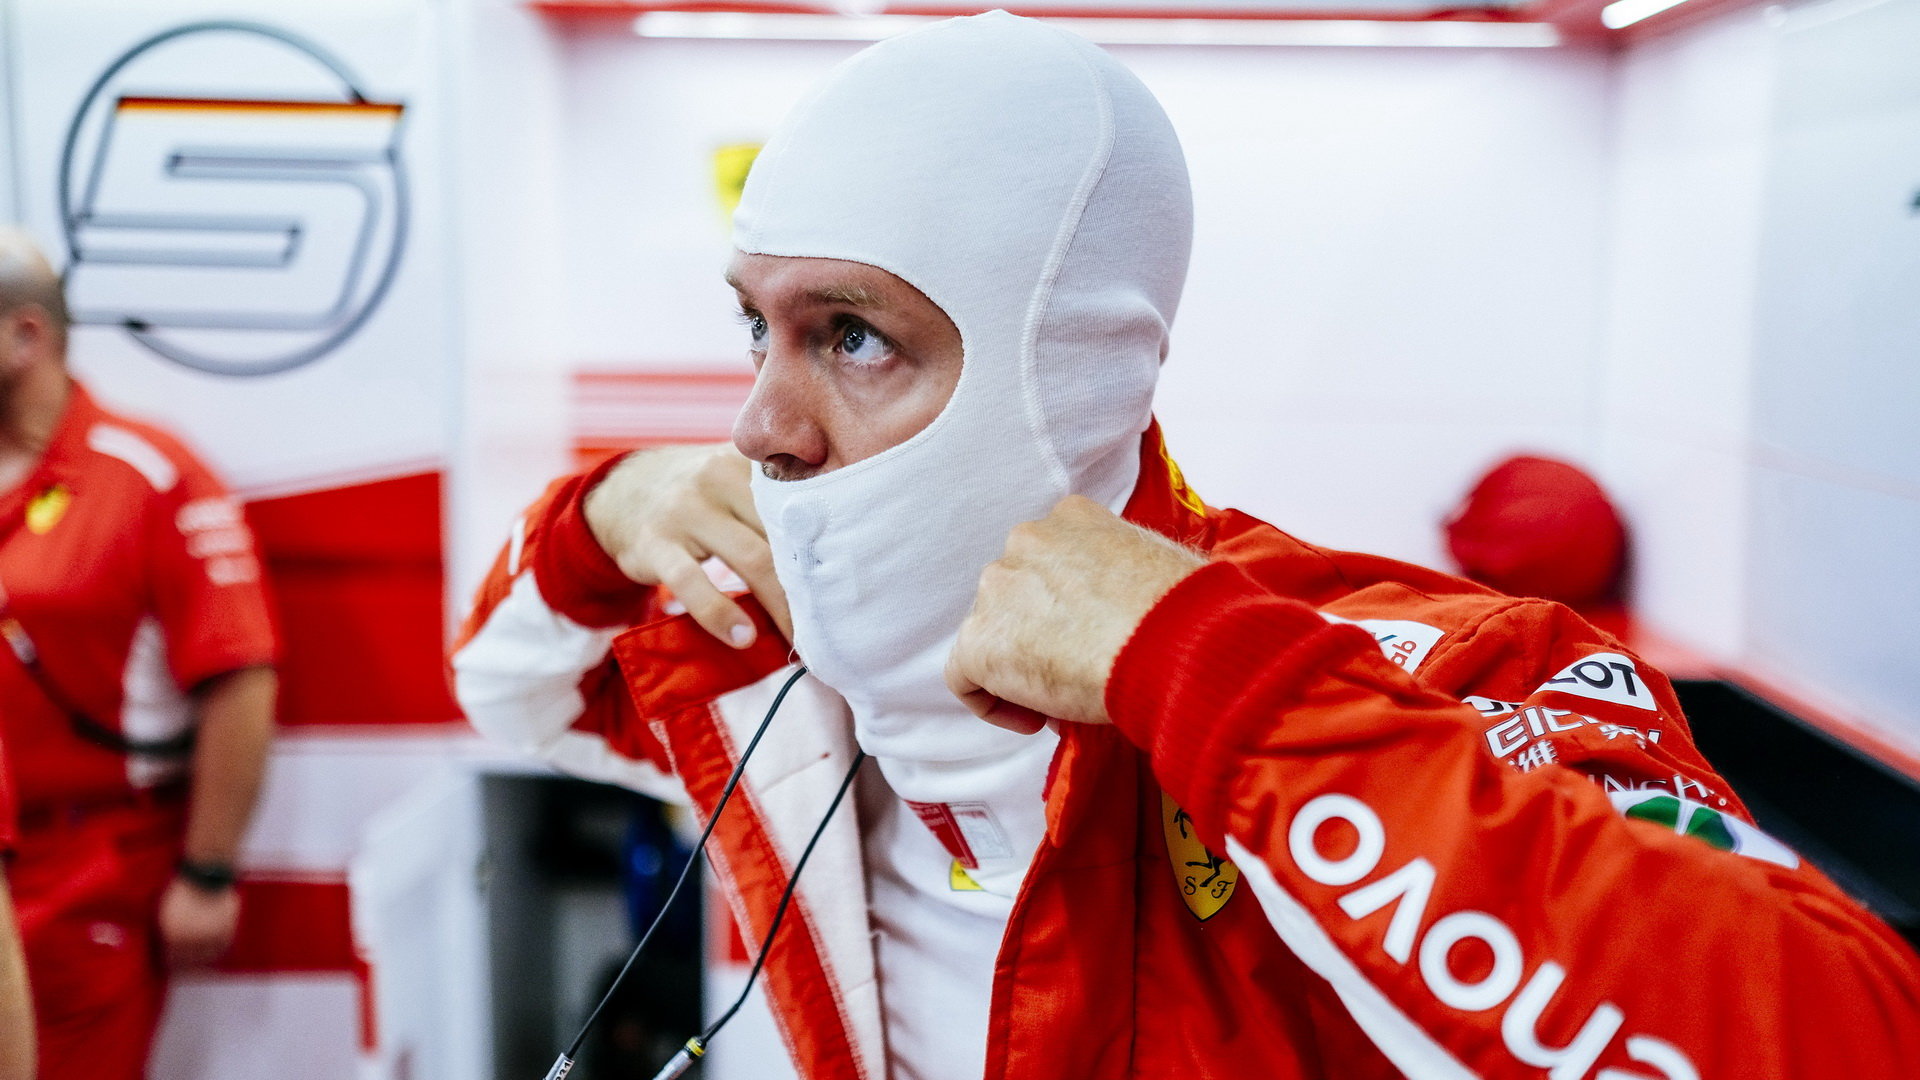 Ferrari dnes kvalifikaci po strategické stránce nezvládlo, Sebastiana čeká start až z páté řady